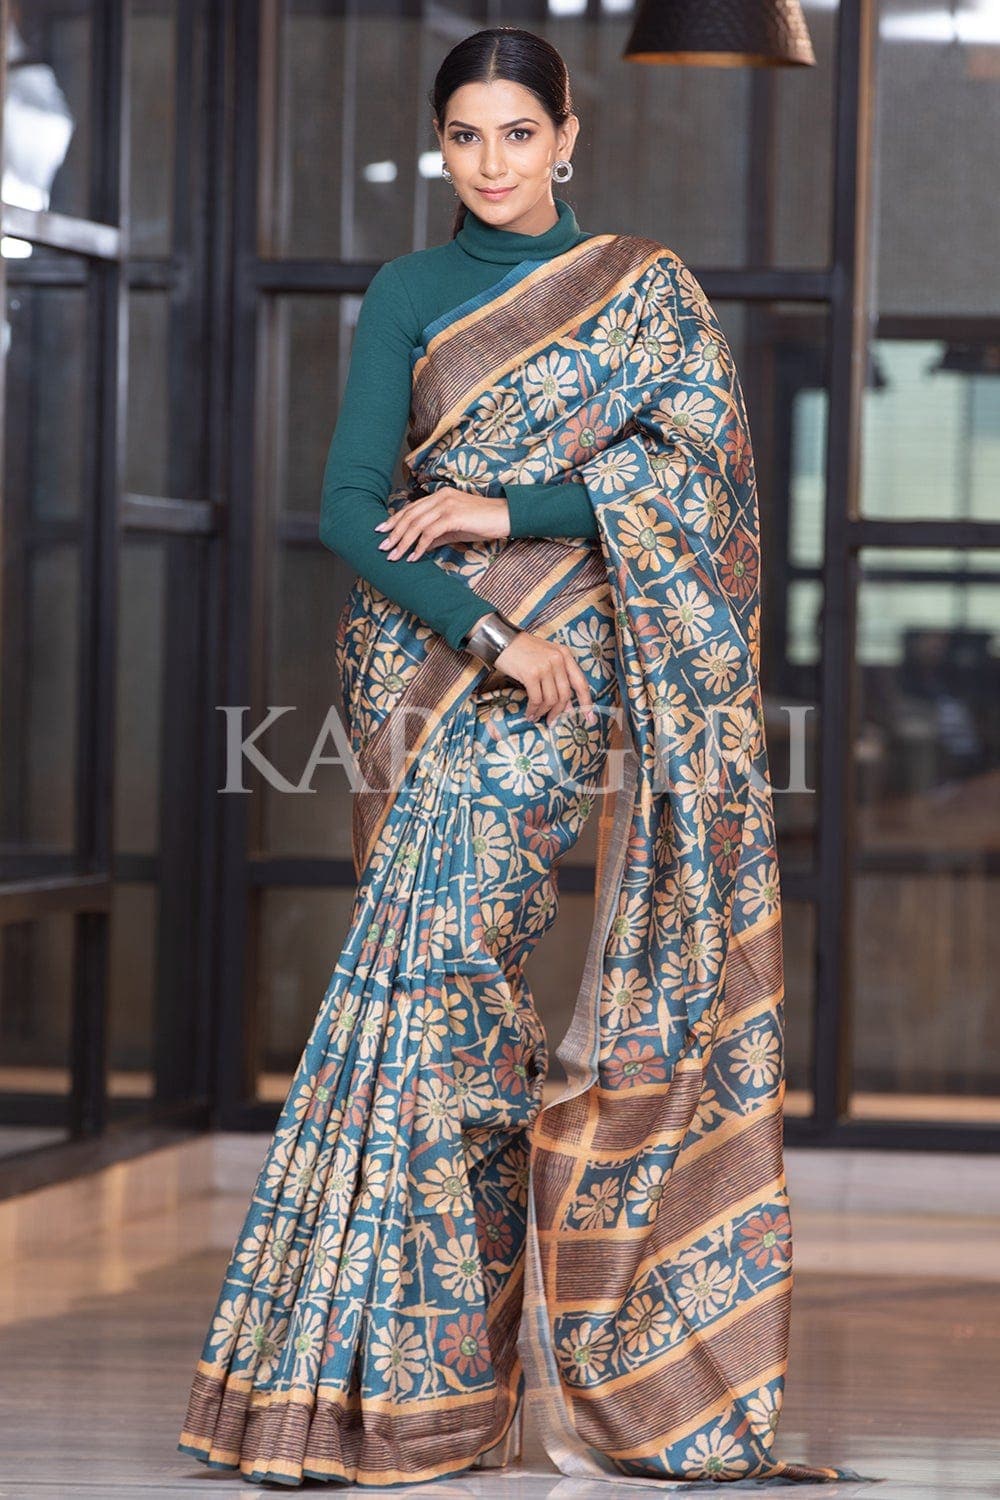 Kalamkari Printed Silk Cotton Sarees & more | Prashanti | 14 Jan 2023 -  YouTube